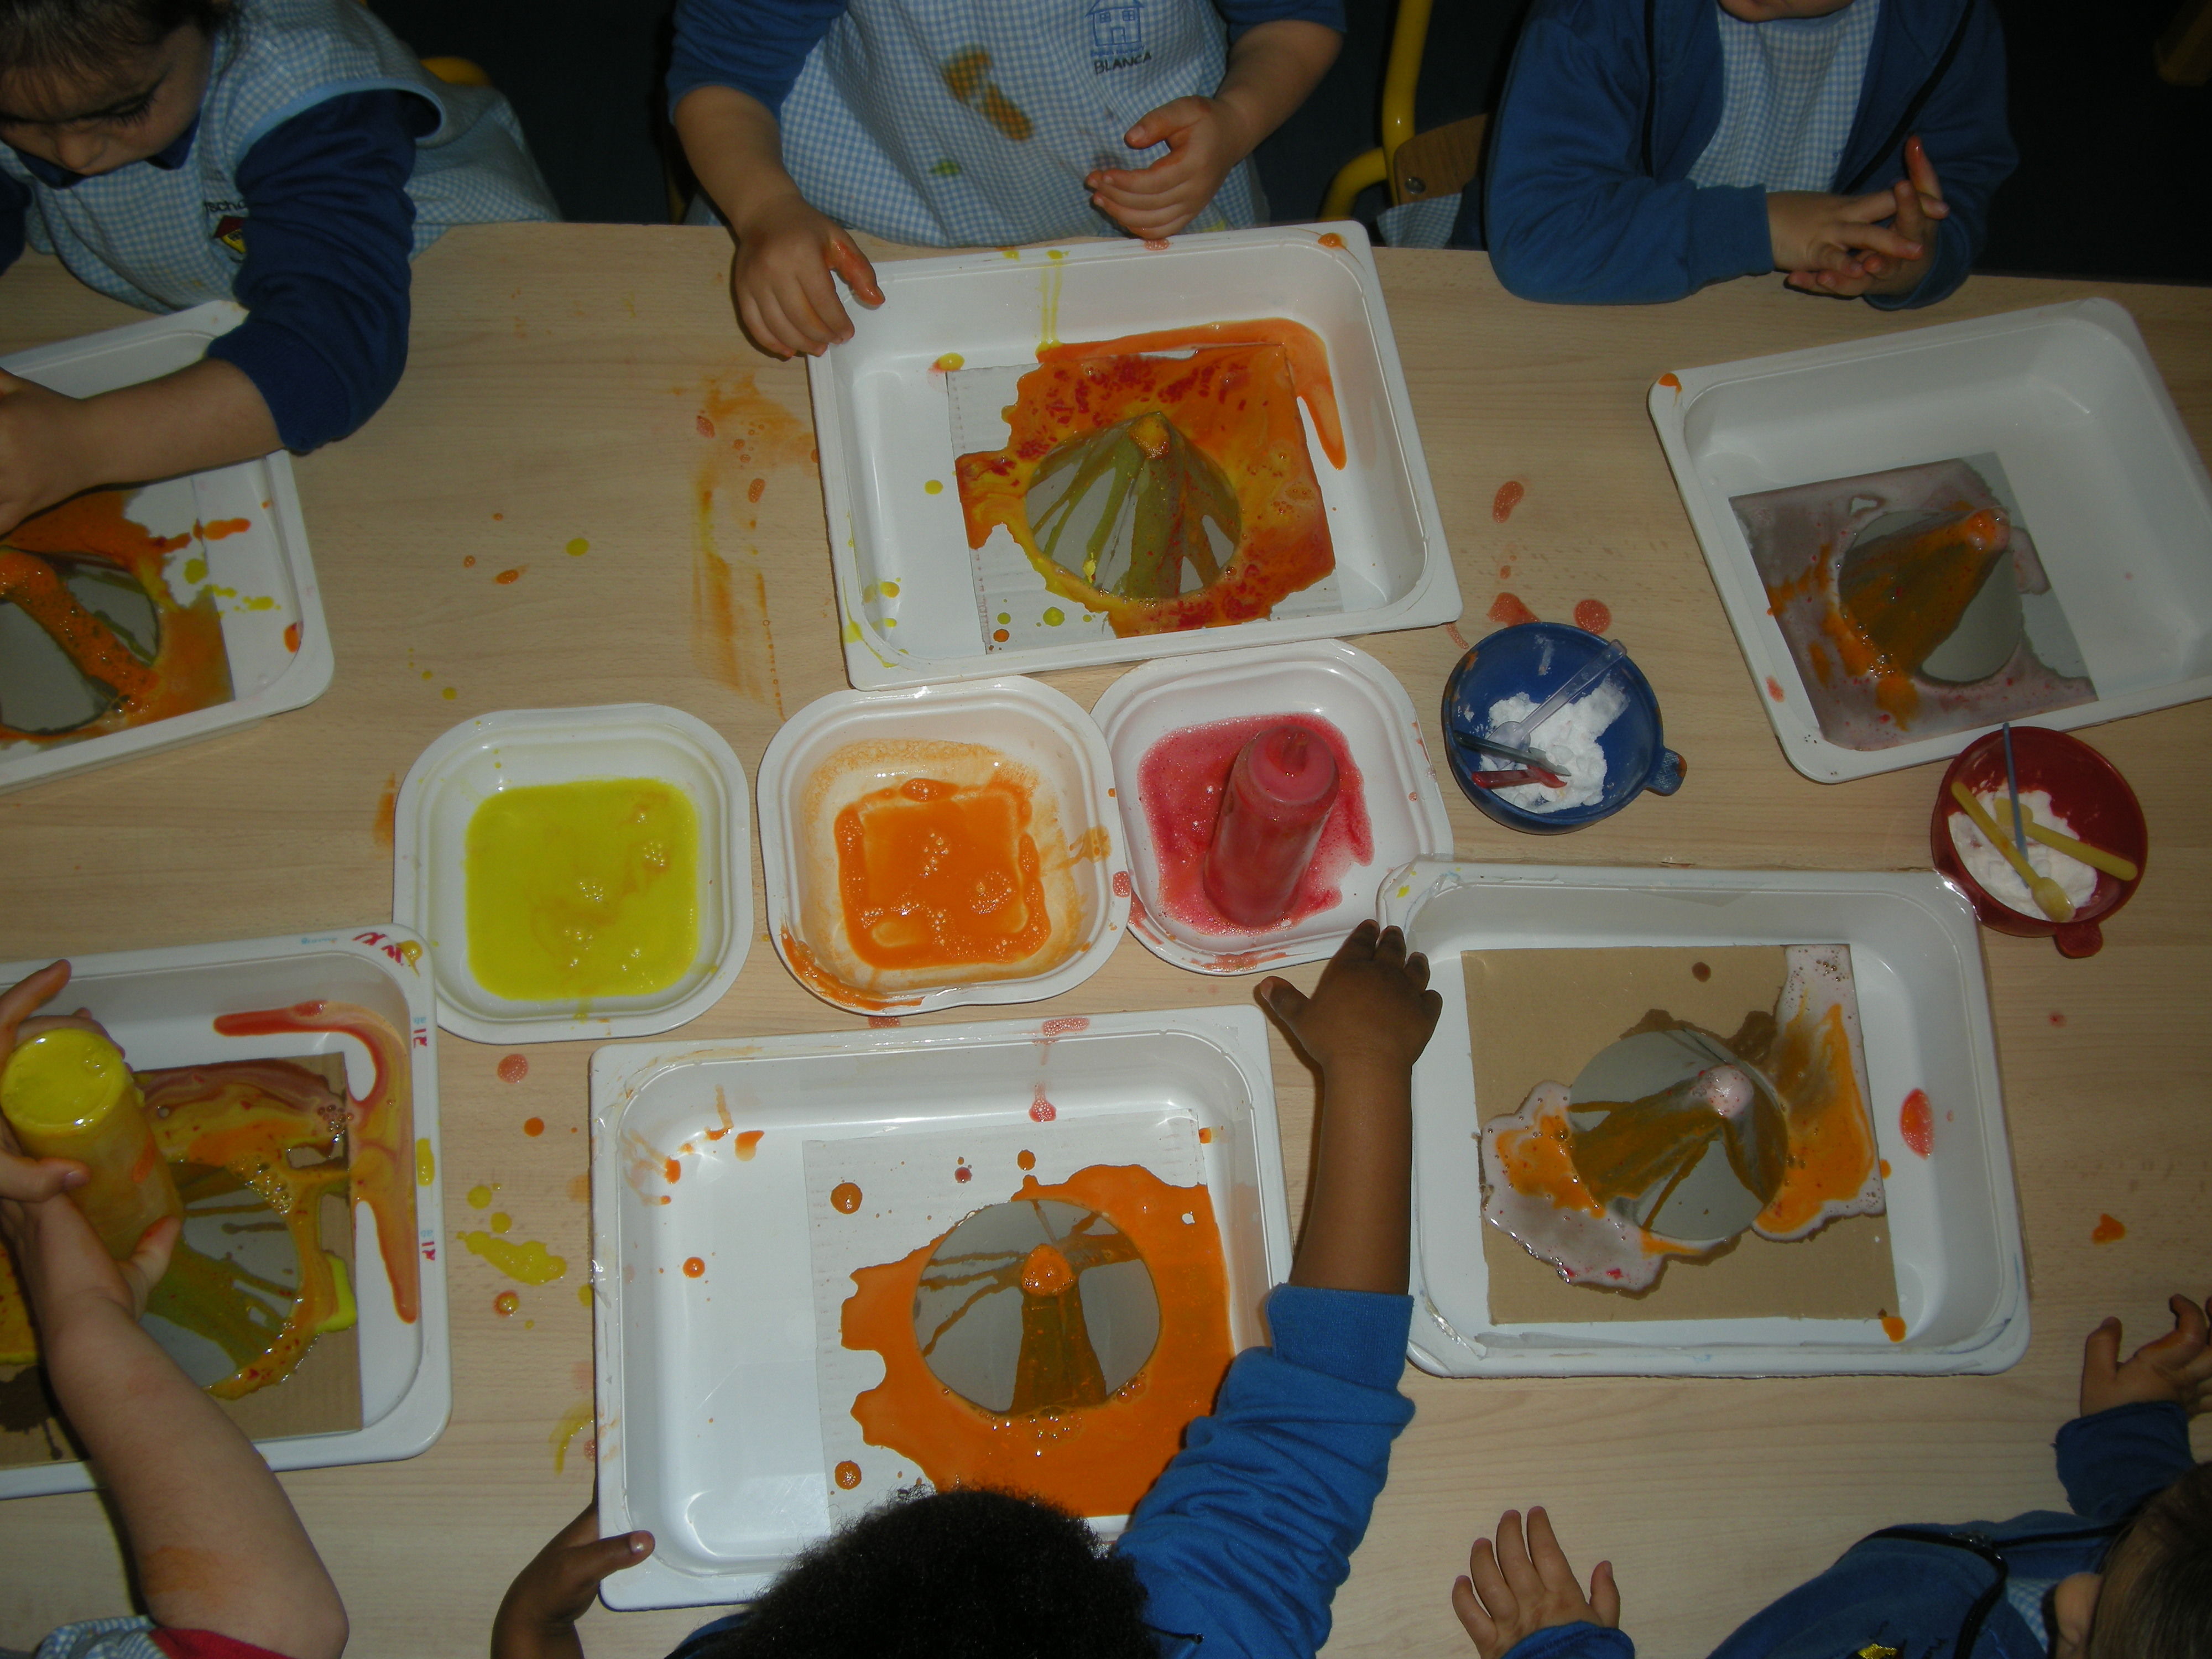 Foto 9 de Guardería y escuela infantil en inglés en Cájar | Playschool English Nursery